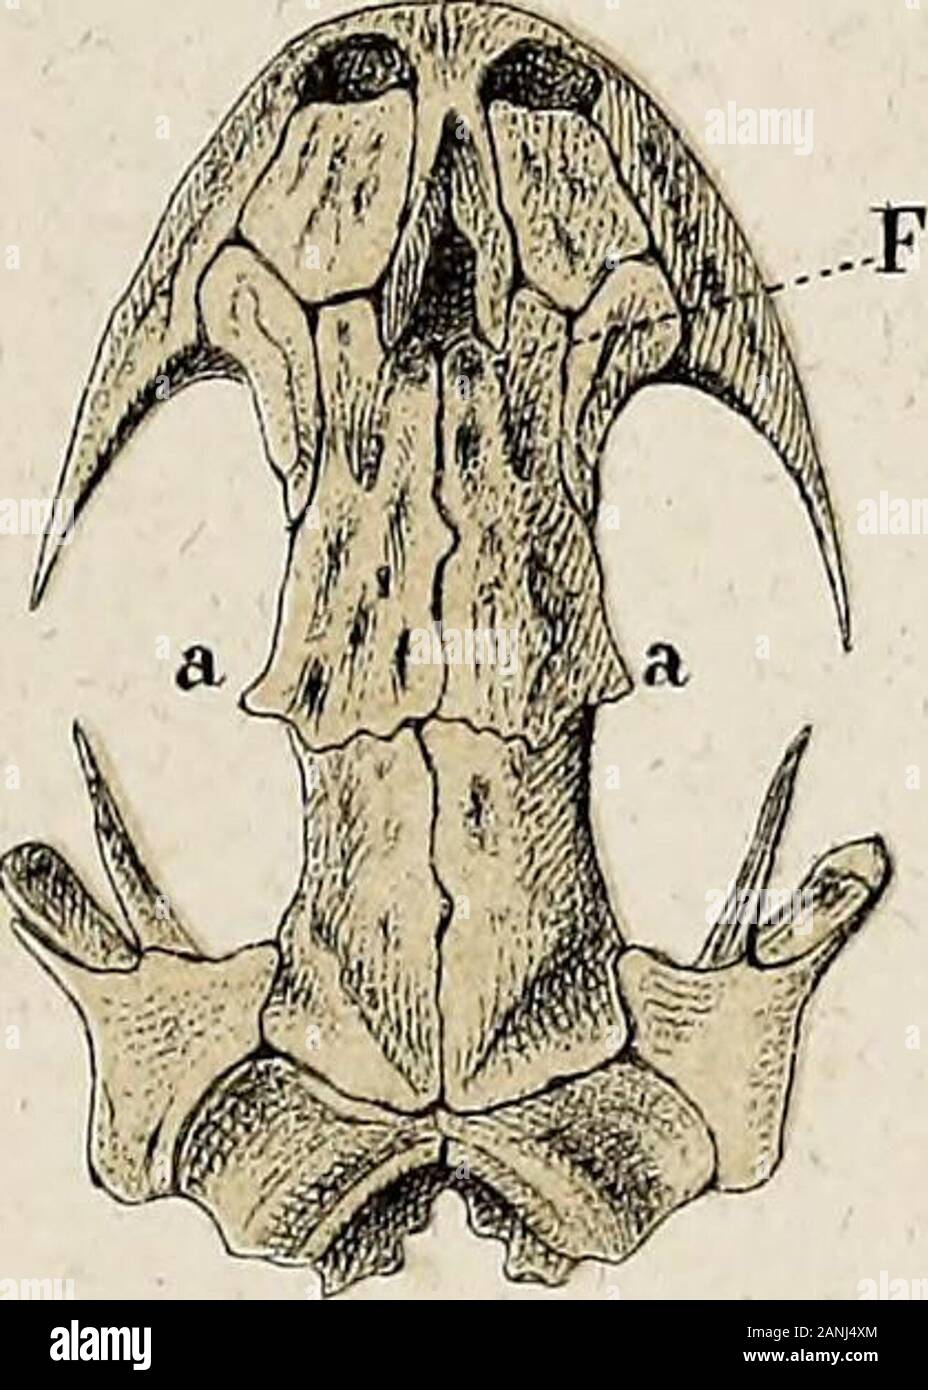 Salamandrina perspicillata und Geotriton fuscus : Versuch einer vergleichenden Anatomie der Salamandrinen, mit Besonderer berücksichtigung der Skelet-Verhaeltnisse . 85. 88 Oe Foto Stock